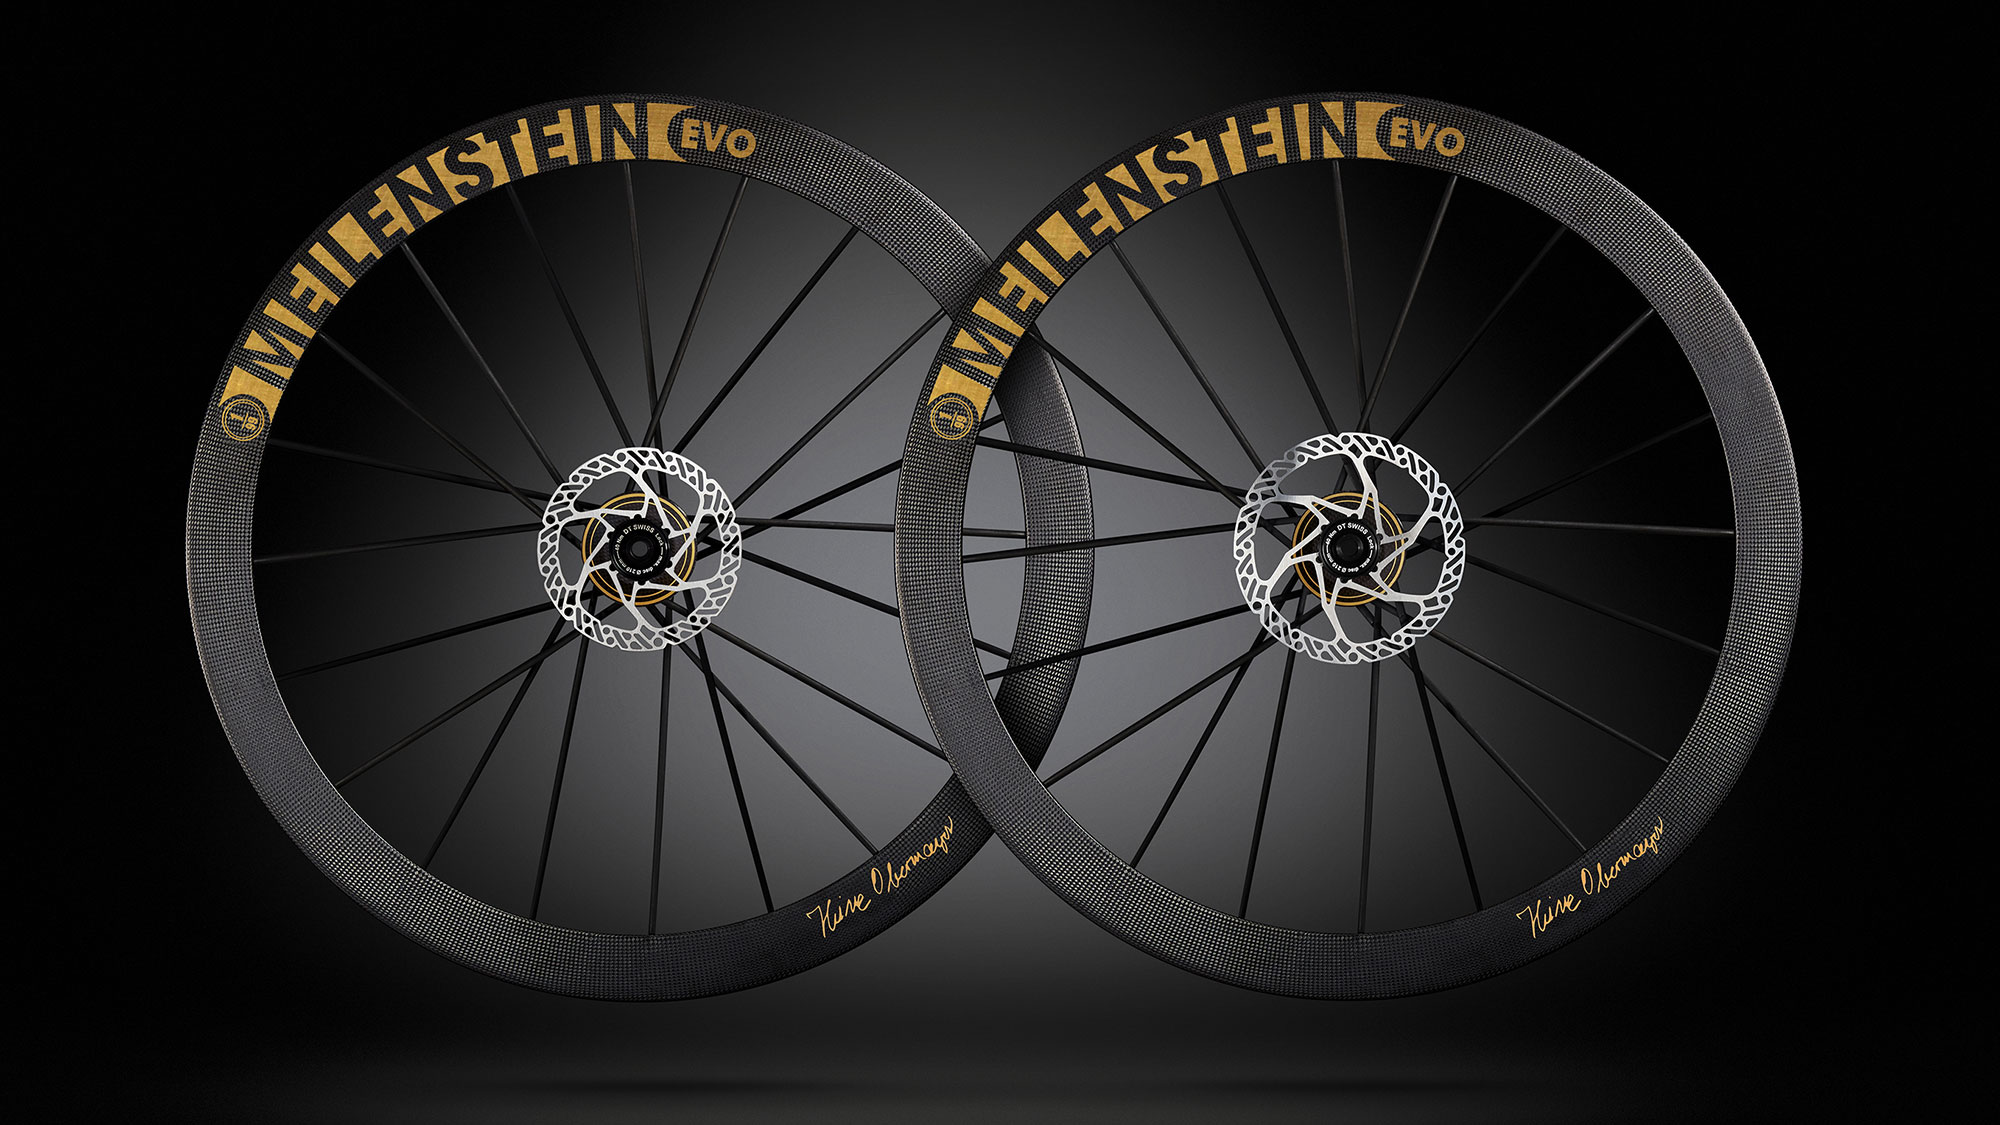 Lightweight-Meilenstein-EVO-Signature-Edition-Gold-carbon-road-wheels_pair.jpg